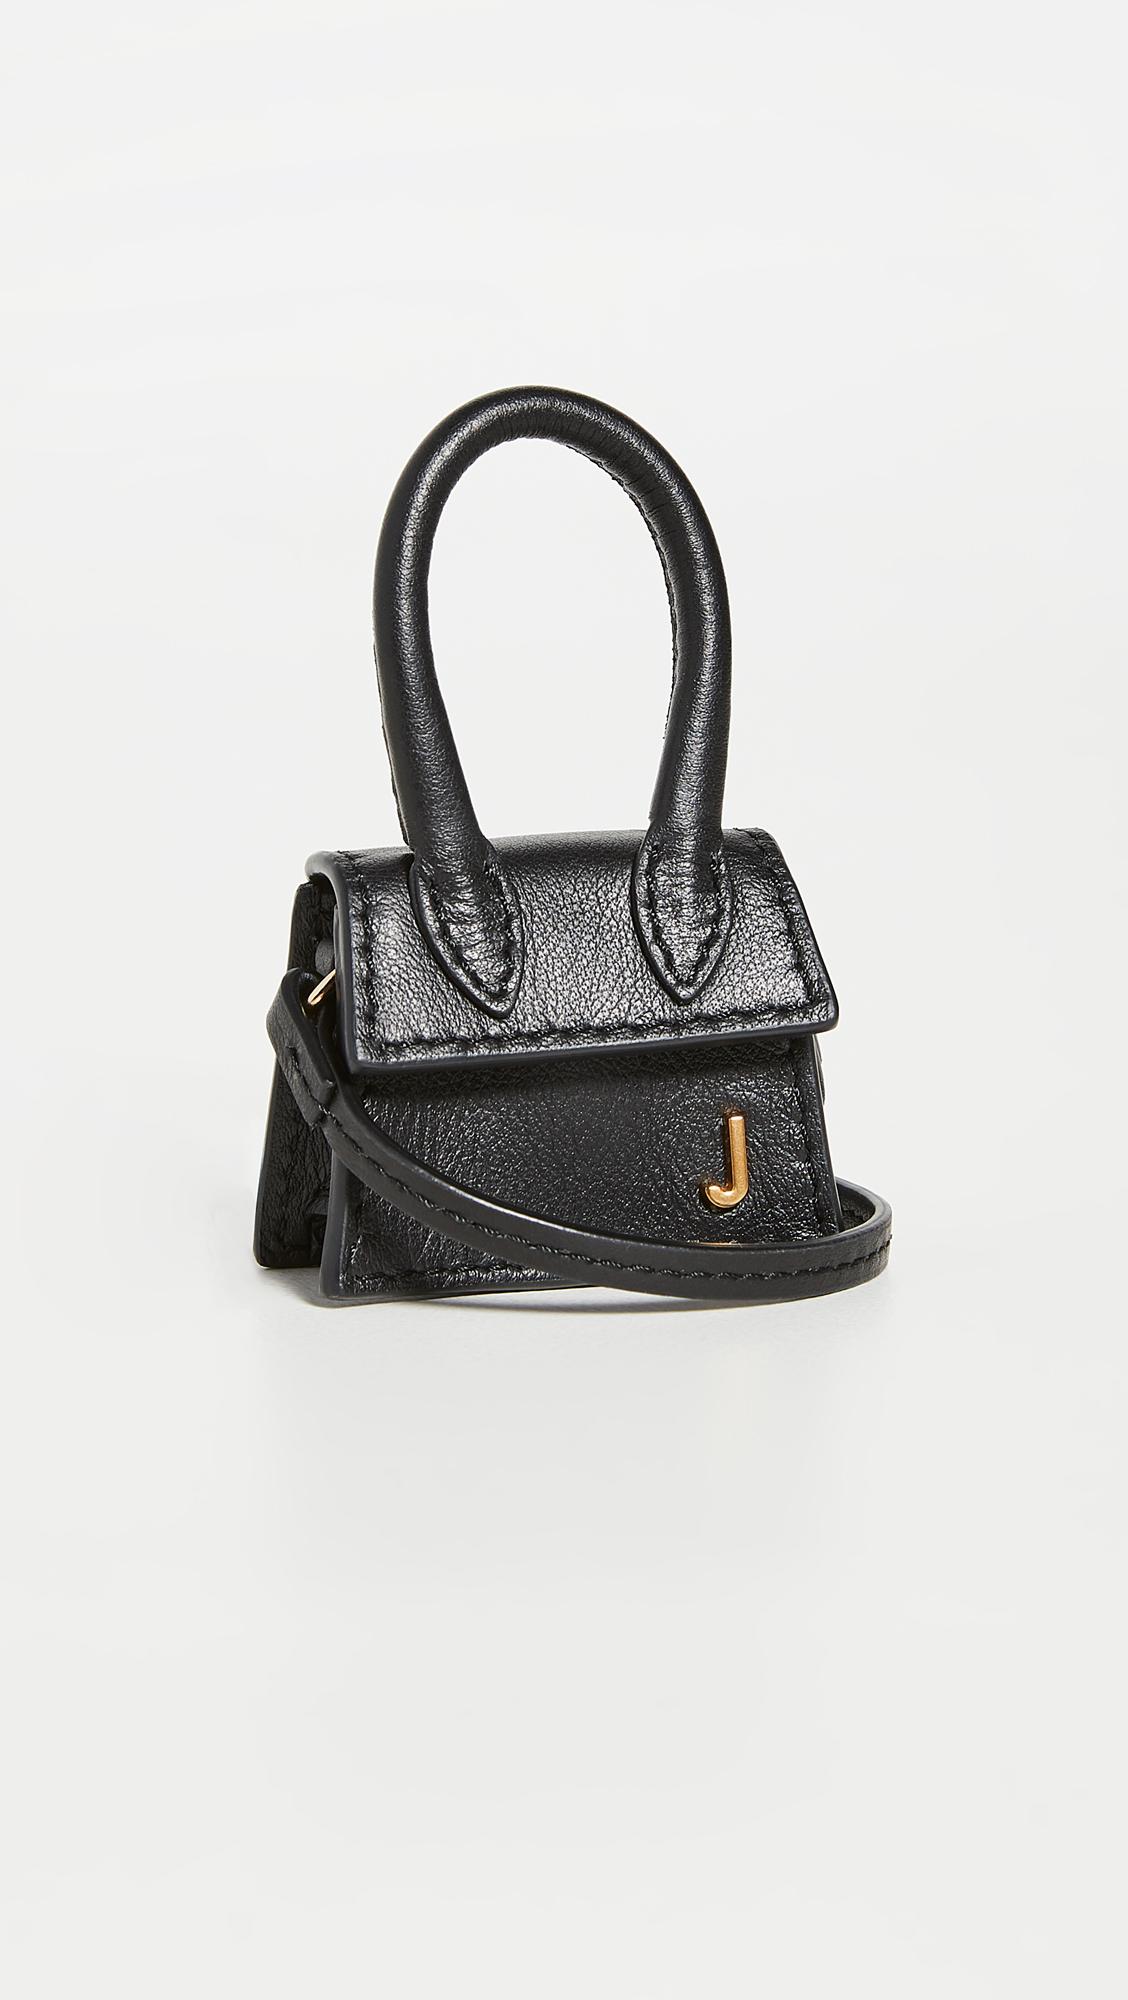 Jacquemus Le Petit Chiquito Mini Leather Bag in Black | Lyst Canada